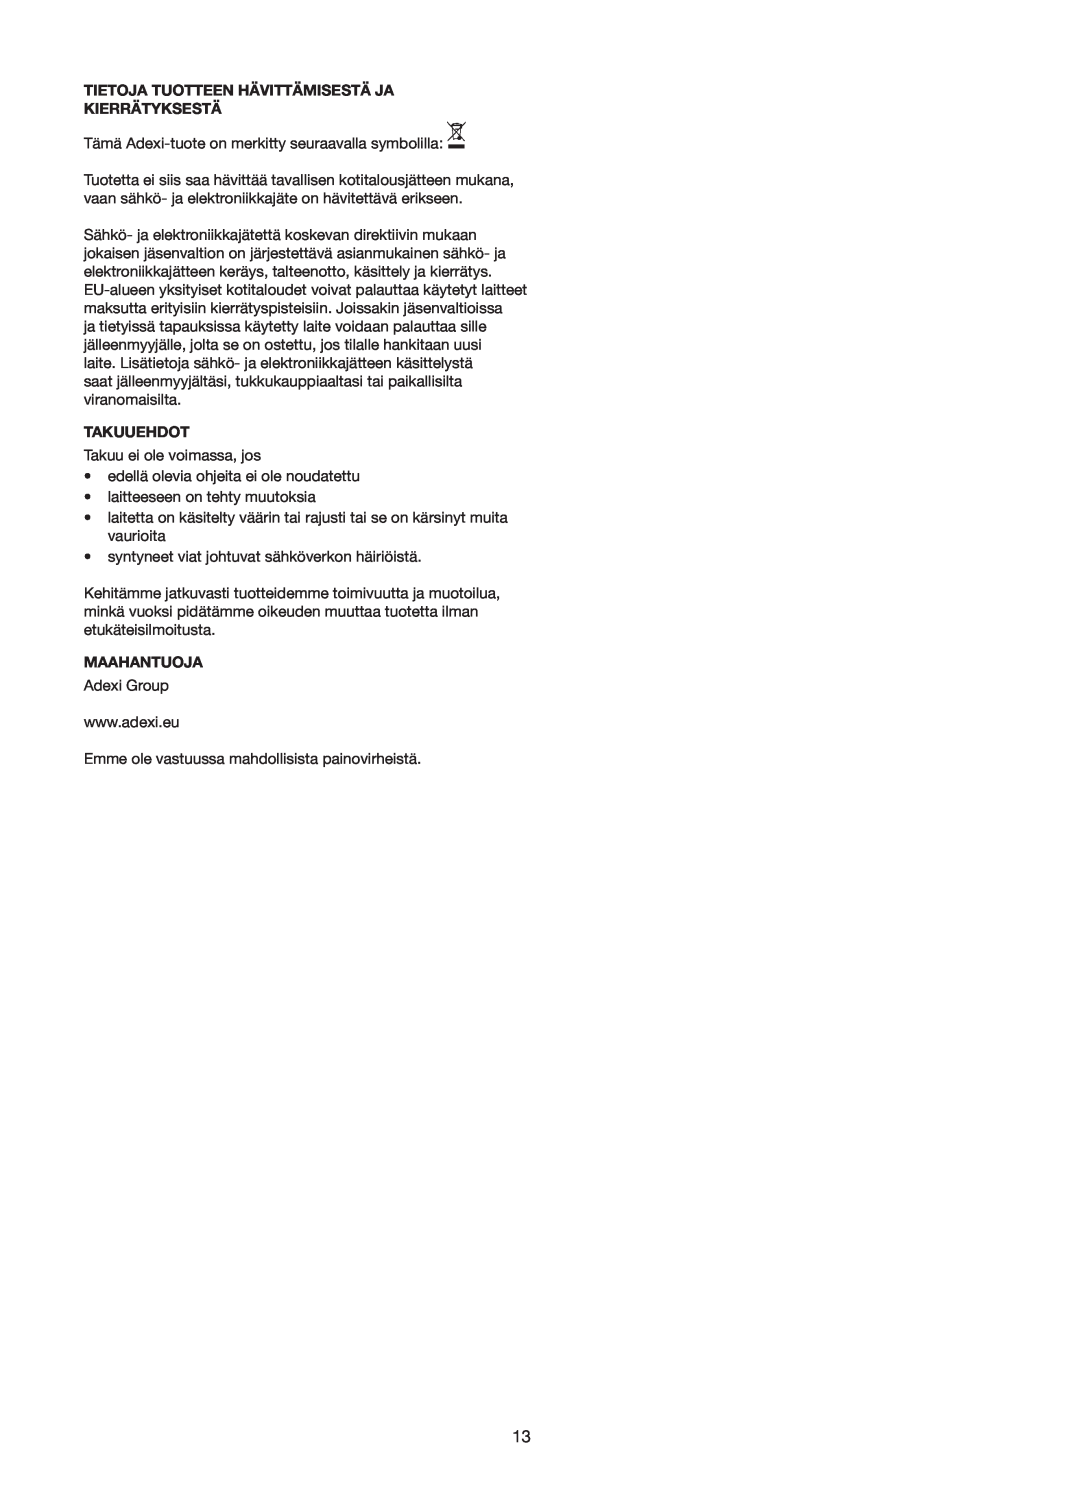 Melissa 640-110/114/127 manual Tietoja Tuotteen Hävittämisestä Ja Kierrätyksestä, Takuuehdot, Maahantuoja 